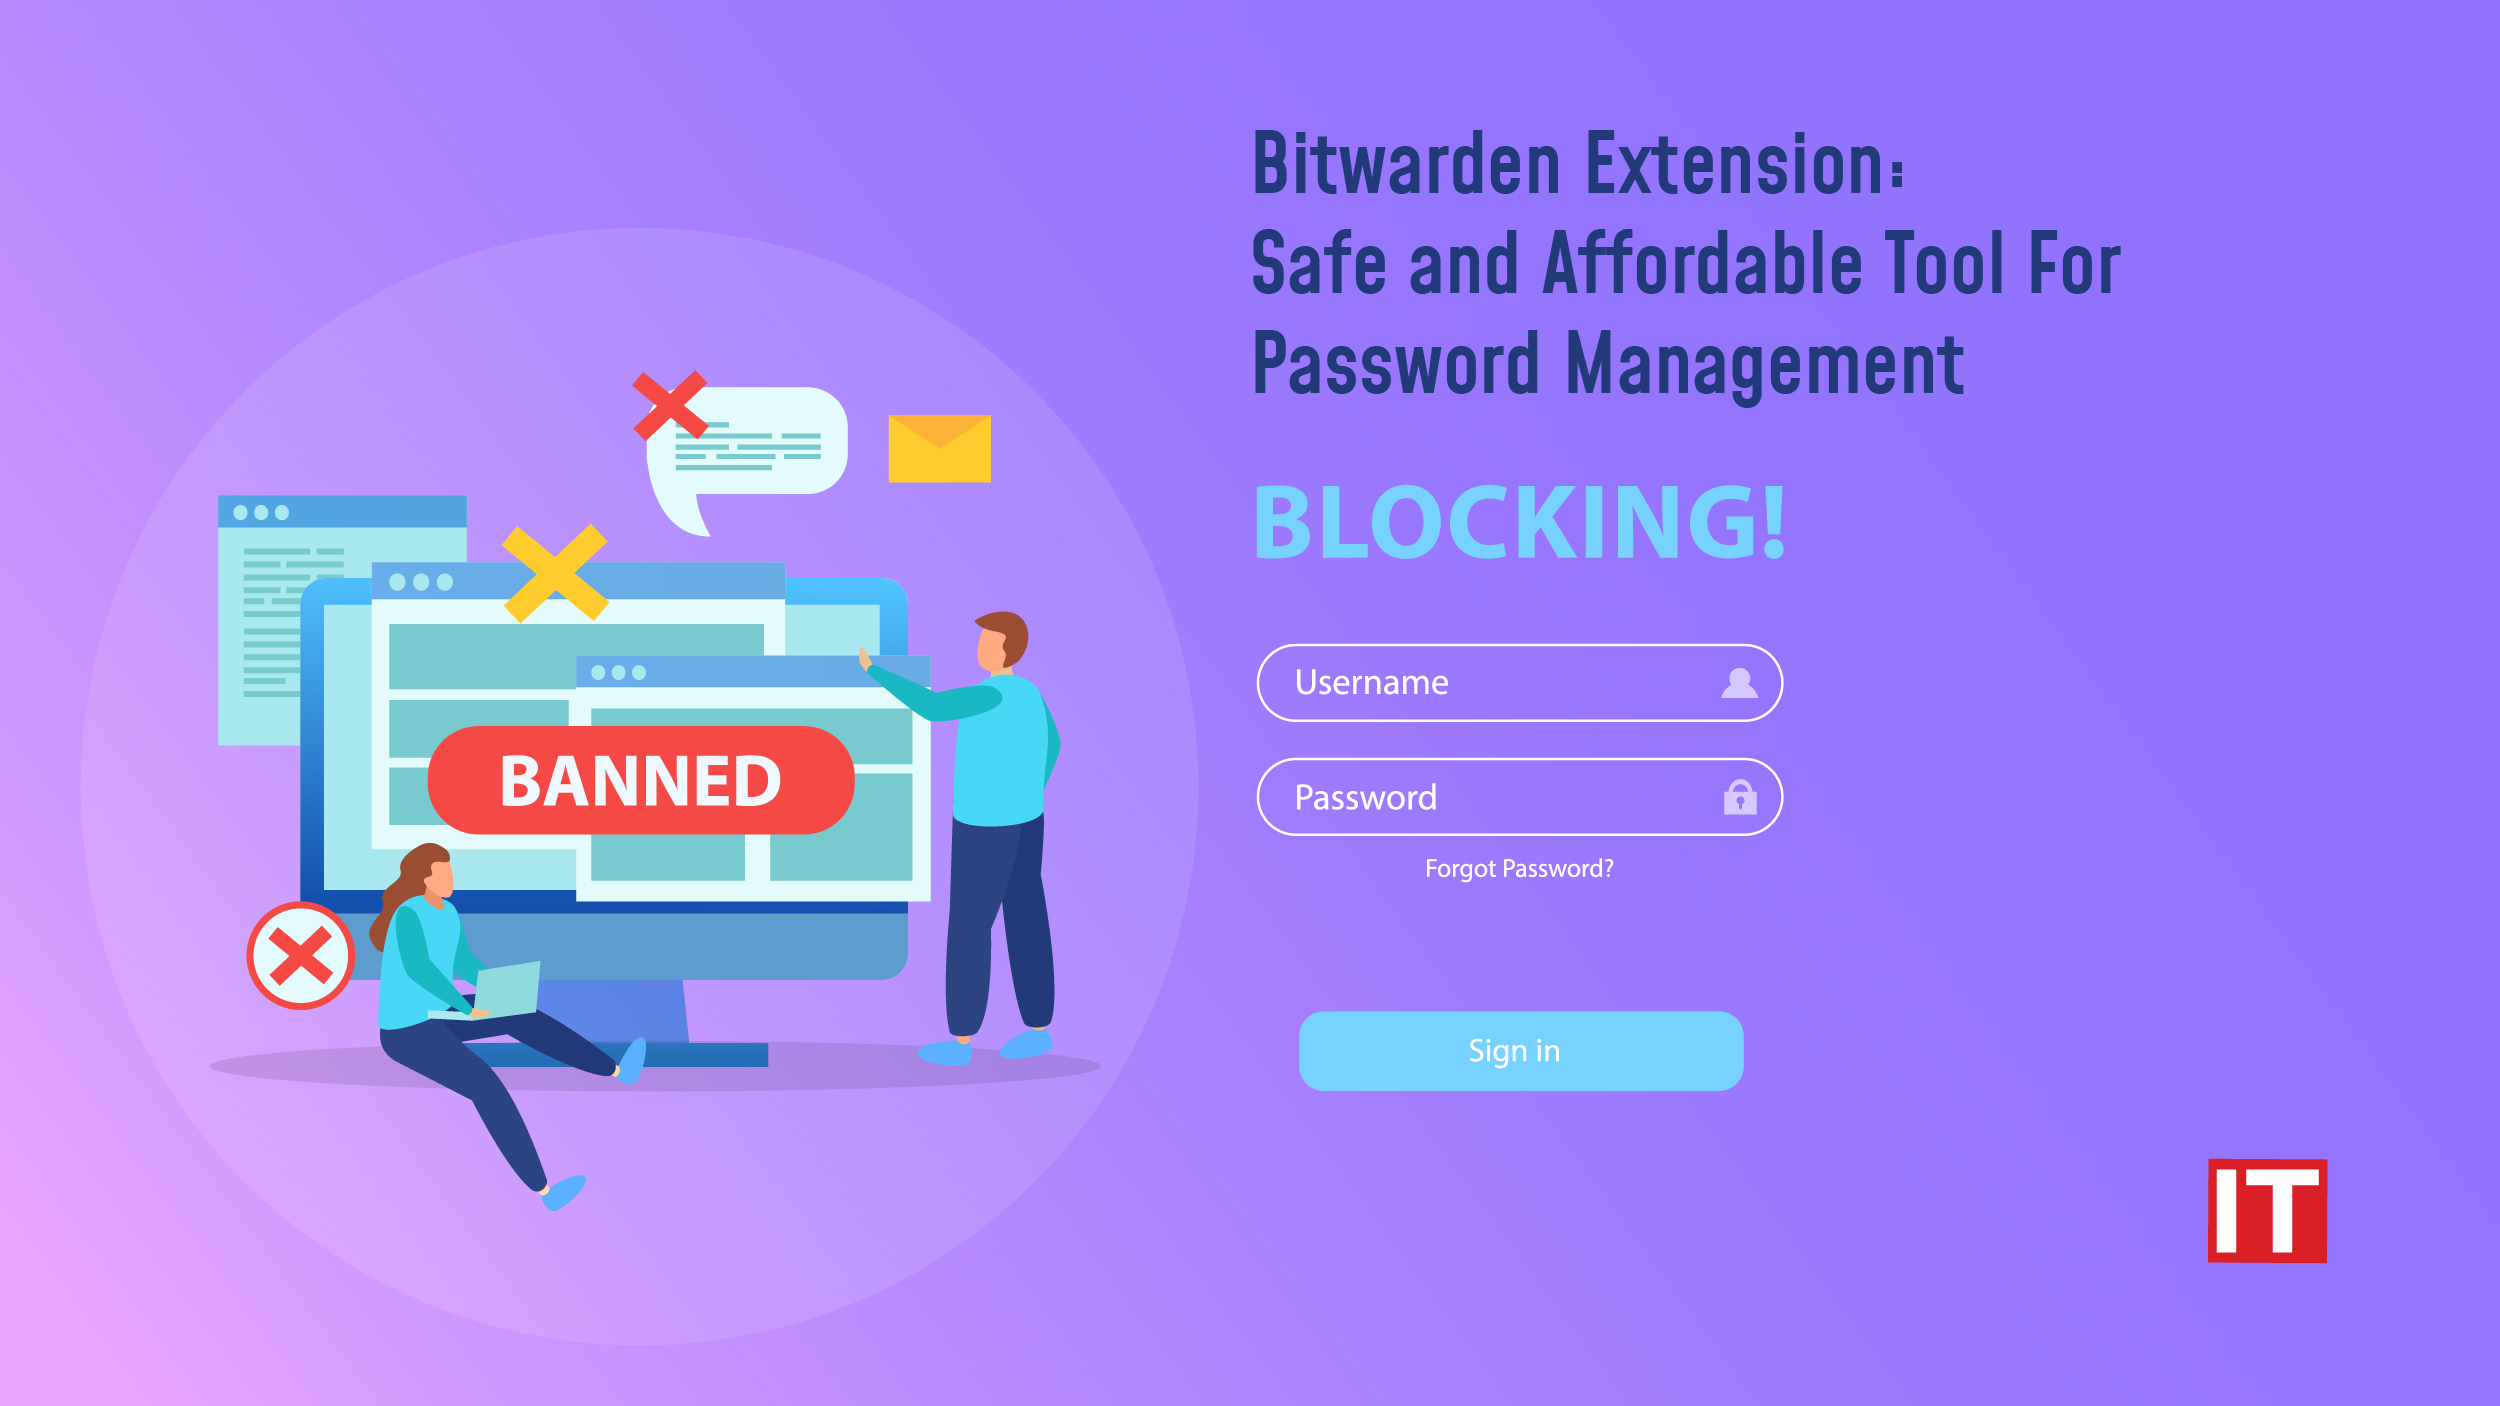 Bitwarden Extension